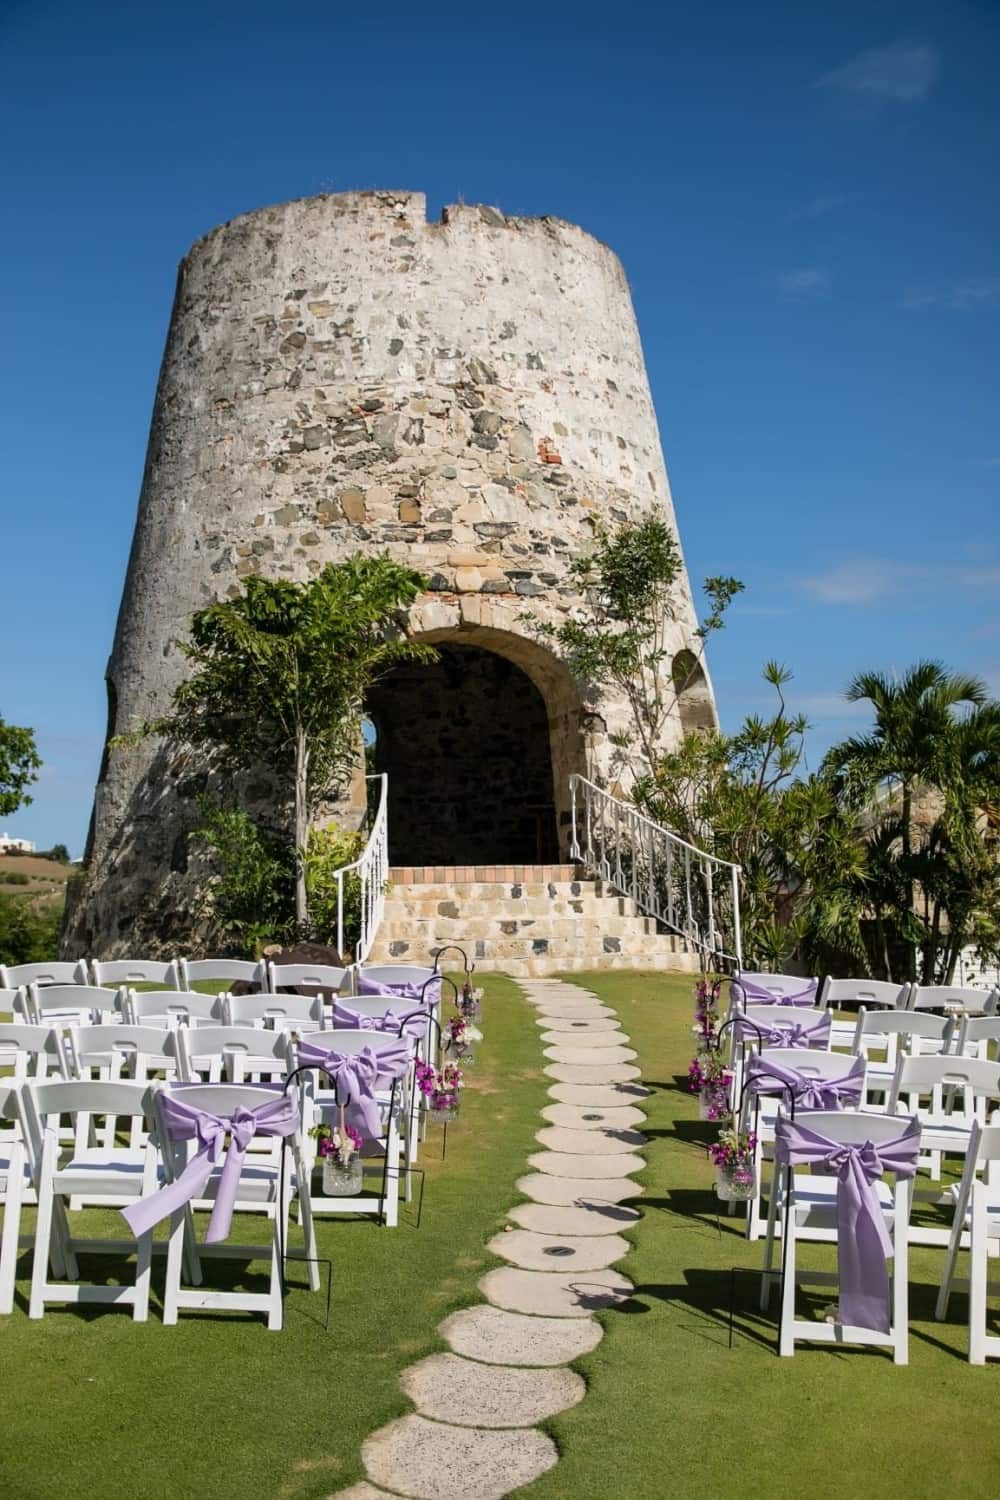 St Croix honeymoons and weddings at the Bucanneer